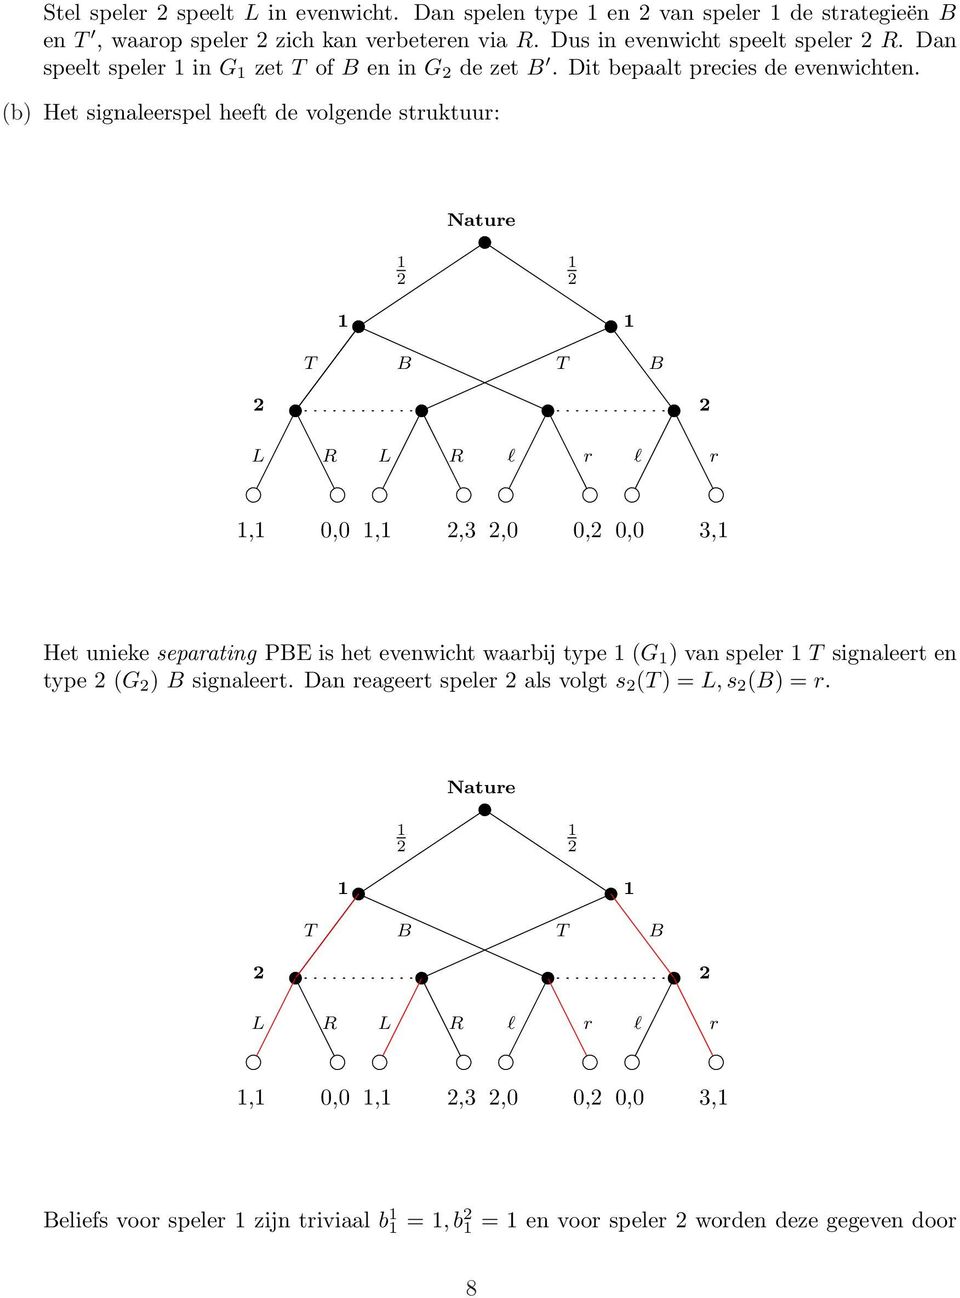 (b) Het signaleerspel heeft de volgende struktuur: Nature L R L R l r l r, 0,0,,3,0 0, 0,0 3, Het unieke separating PE is het evenwicht waarbij type (G )